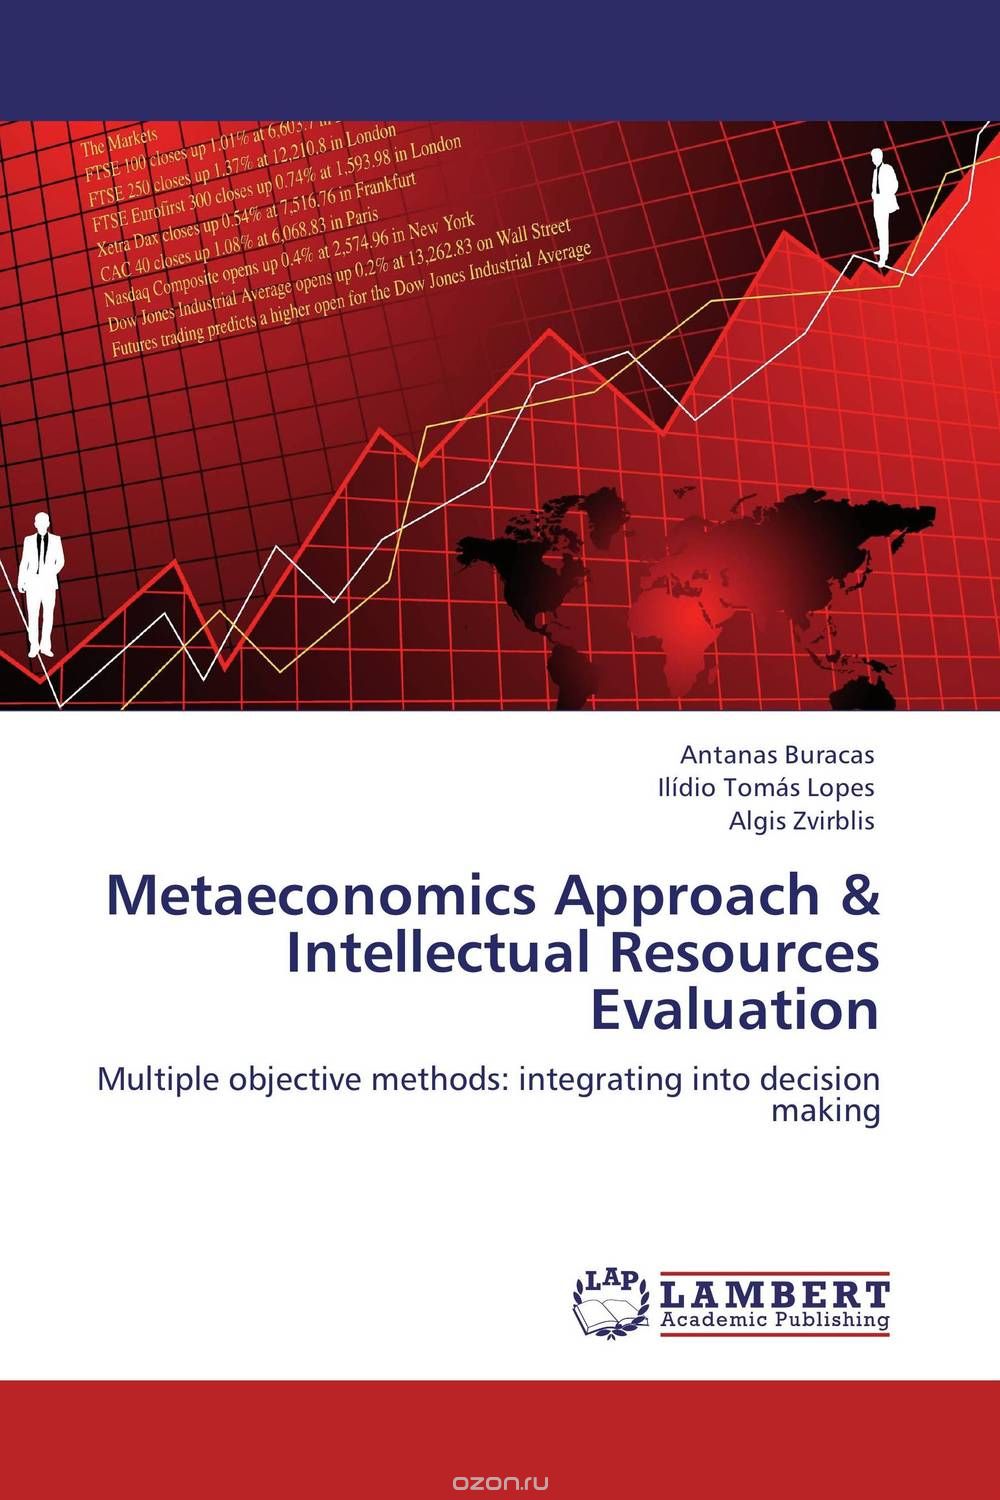 Скачать книгу "Metaeconomics Approach & Intellectual Resources Evaluation"